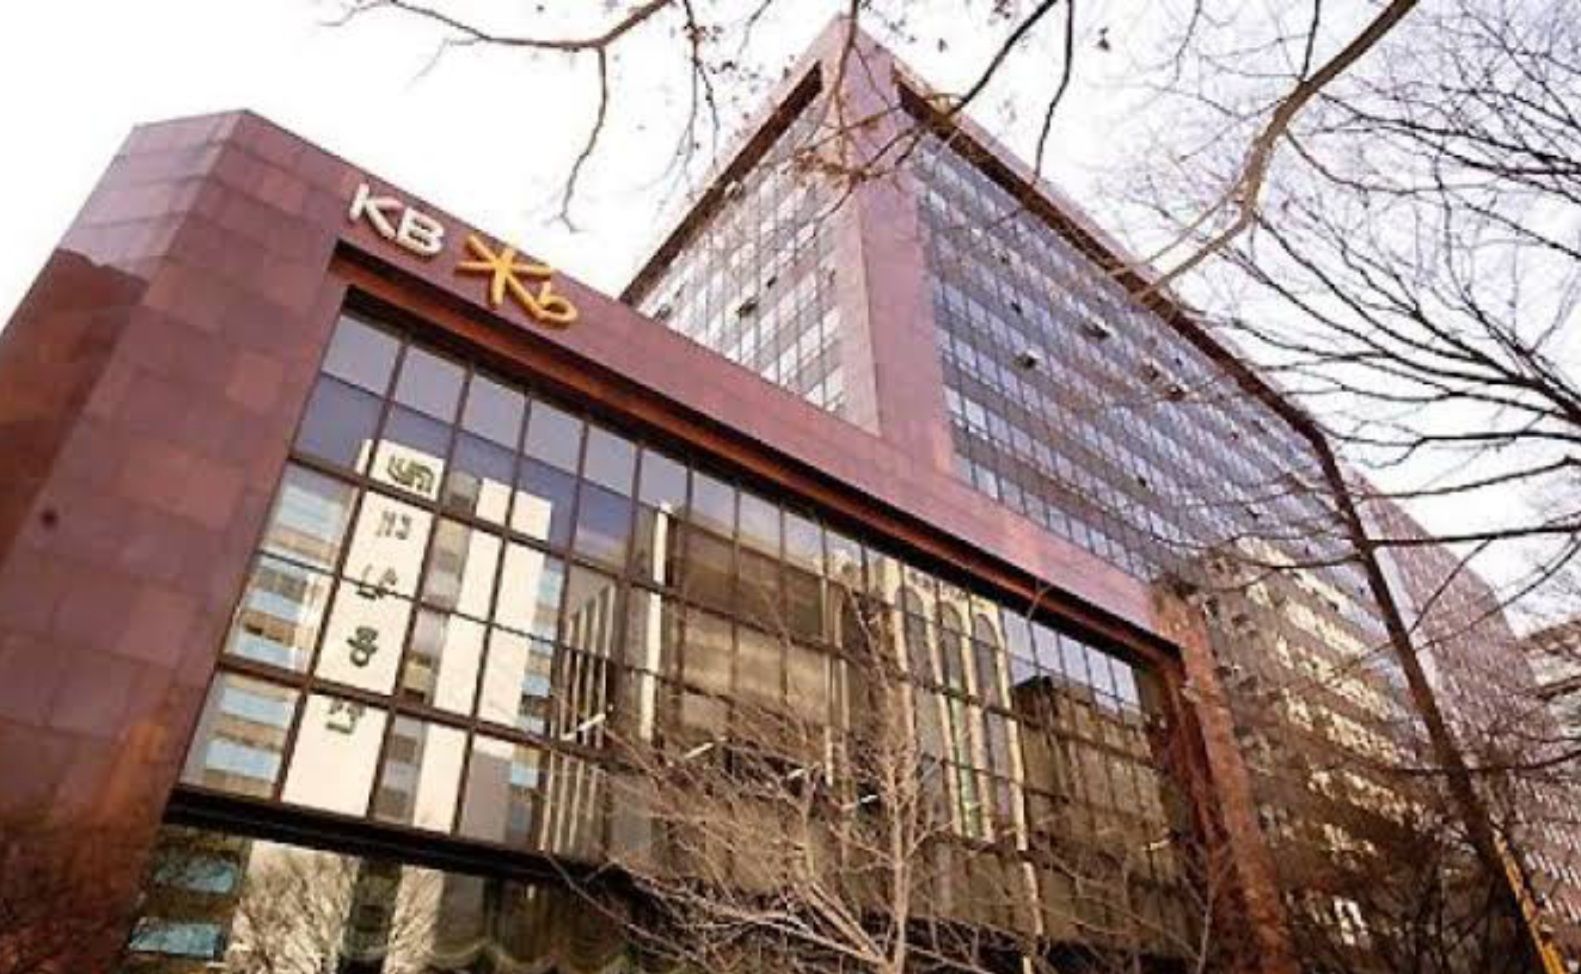 KB Bukopin dipastikan siap injak gas di ranah perbankan digital setelah resmi bersinergi dengan KB Financial Group, perusahaan raksasa keuangan asal Korea melalui KB Kookmin Bank.